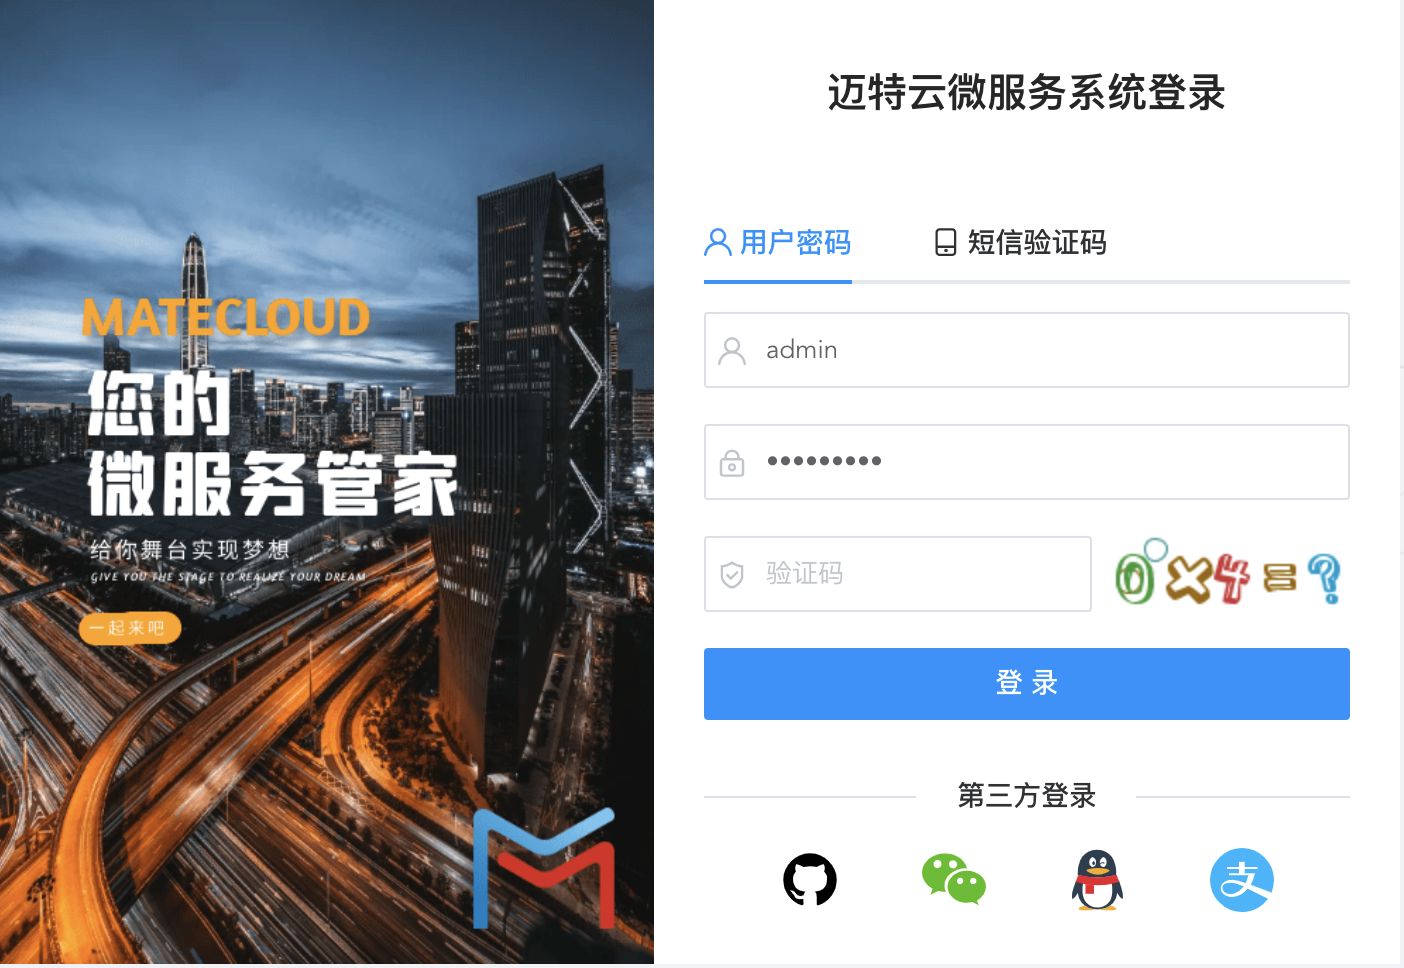 MateCloud 3.5.8 正式版发布， Spring Cloud Alibaba 的微服务平台